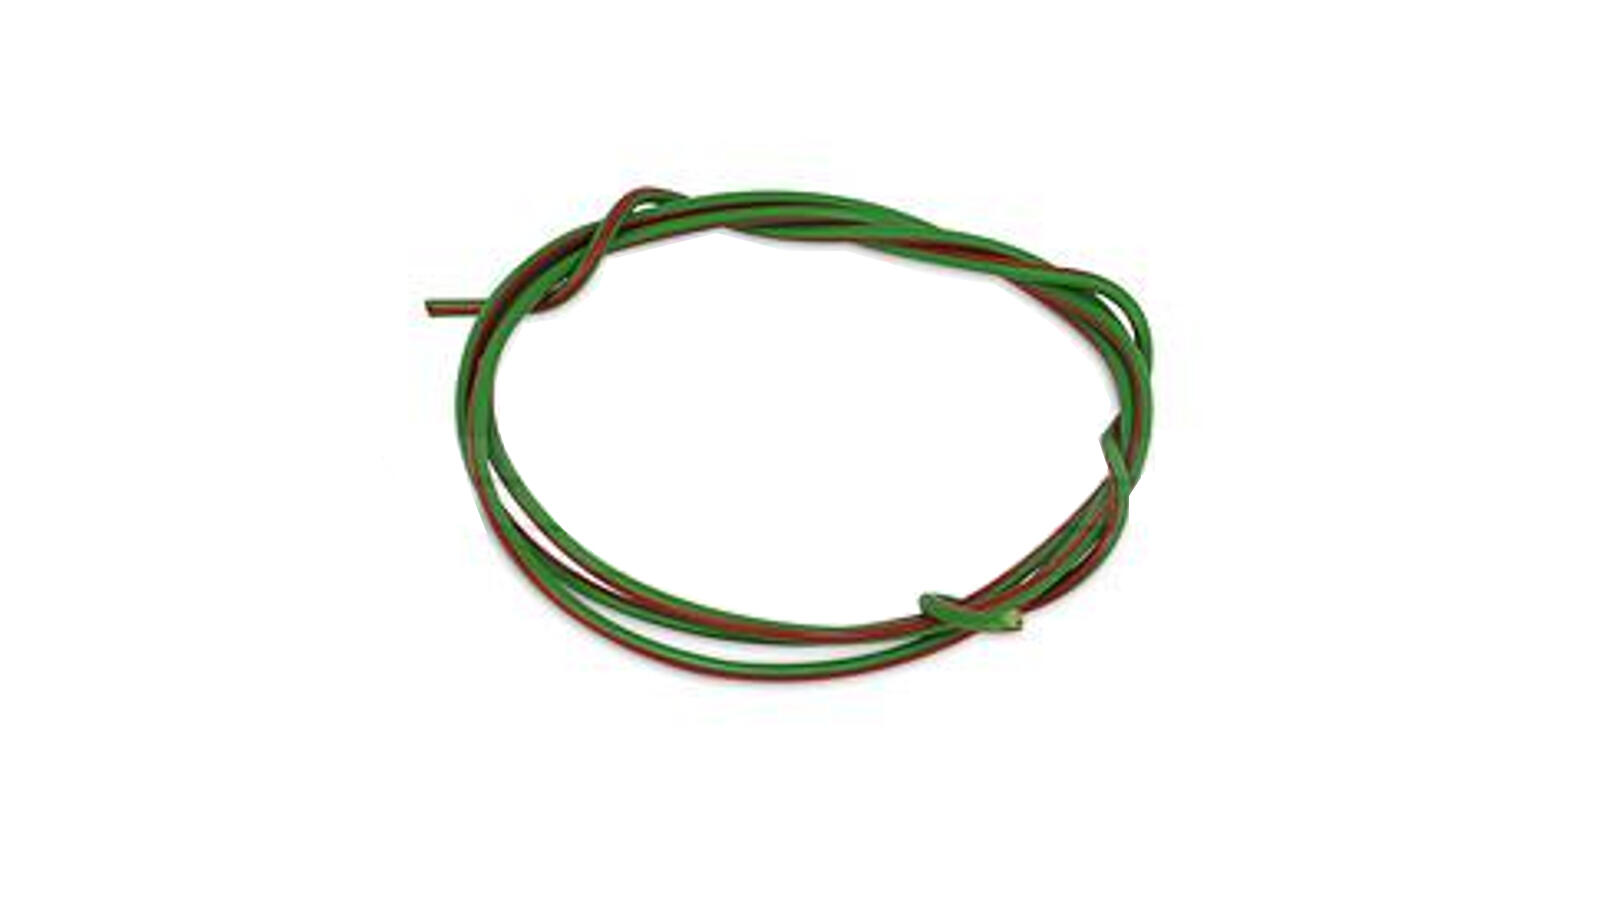 Kabel 1,5mm² 1m grün